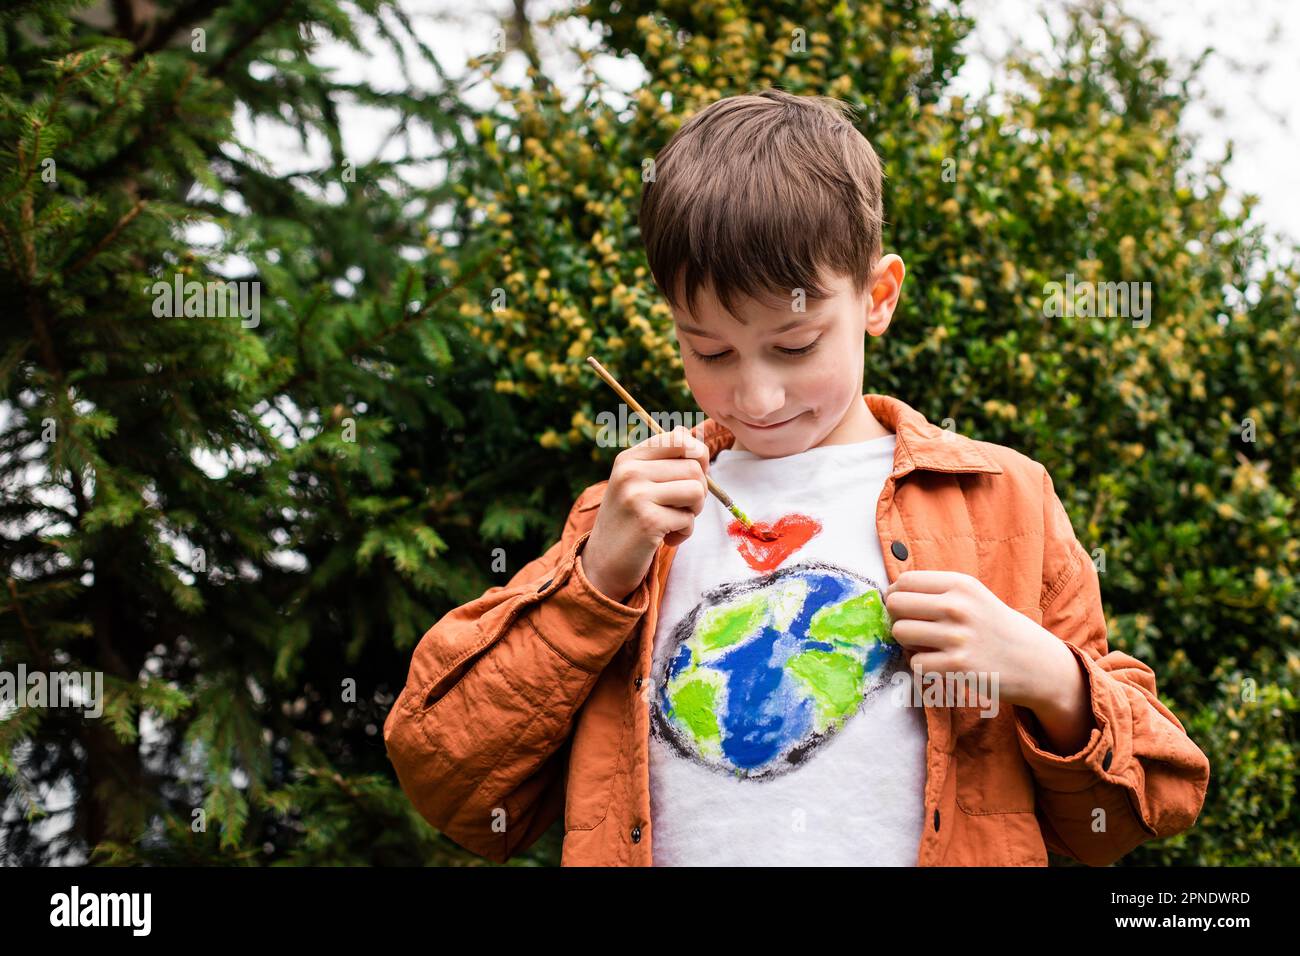 Concept de mode de vie durable. Un écolier dessine un globe terrestre sur un t-shirt. Énergie verte, ESG, ressources renouvelables, protection de l'environnement, protection de la planète Banque D'Images